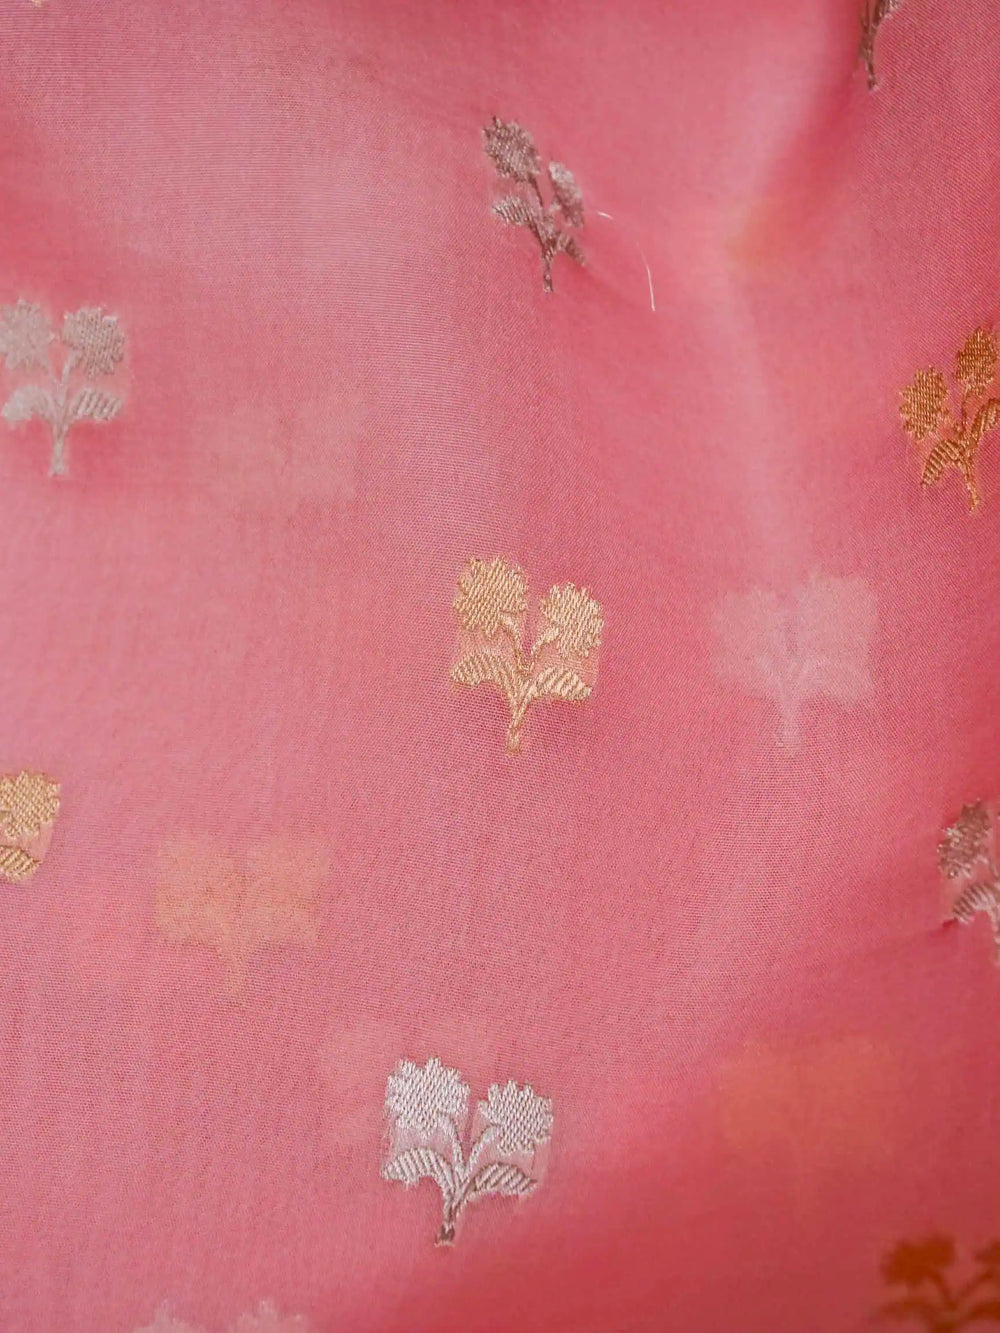 Handwoven Peach Banarasi Kora Silk Saree